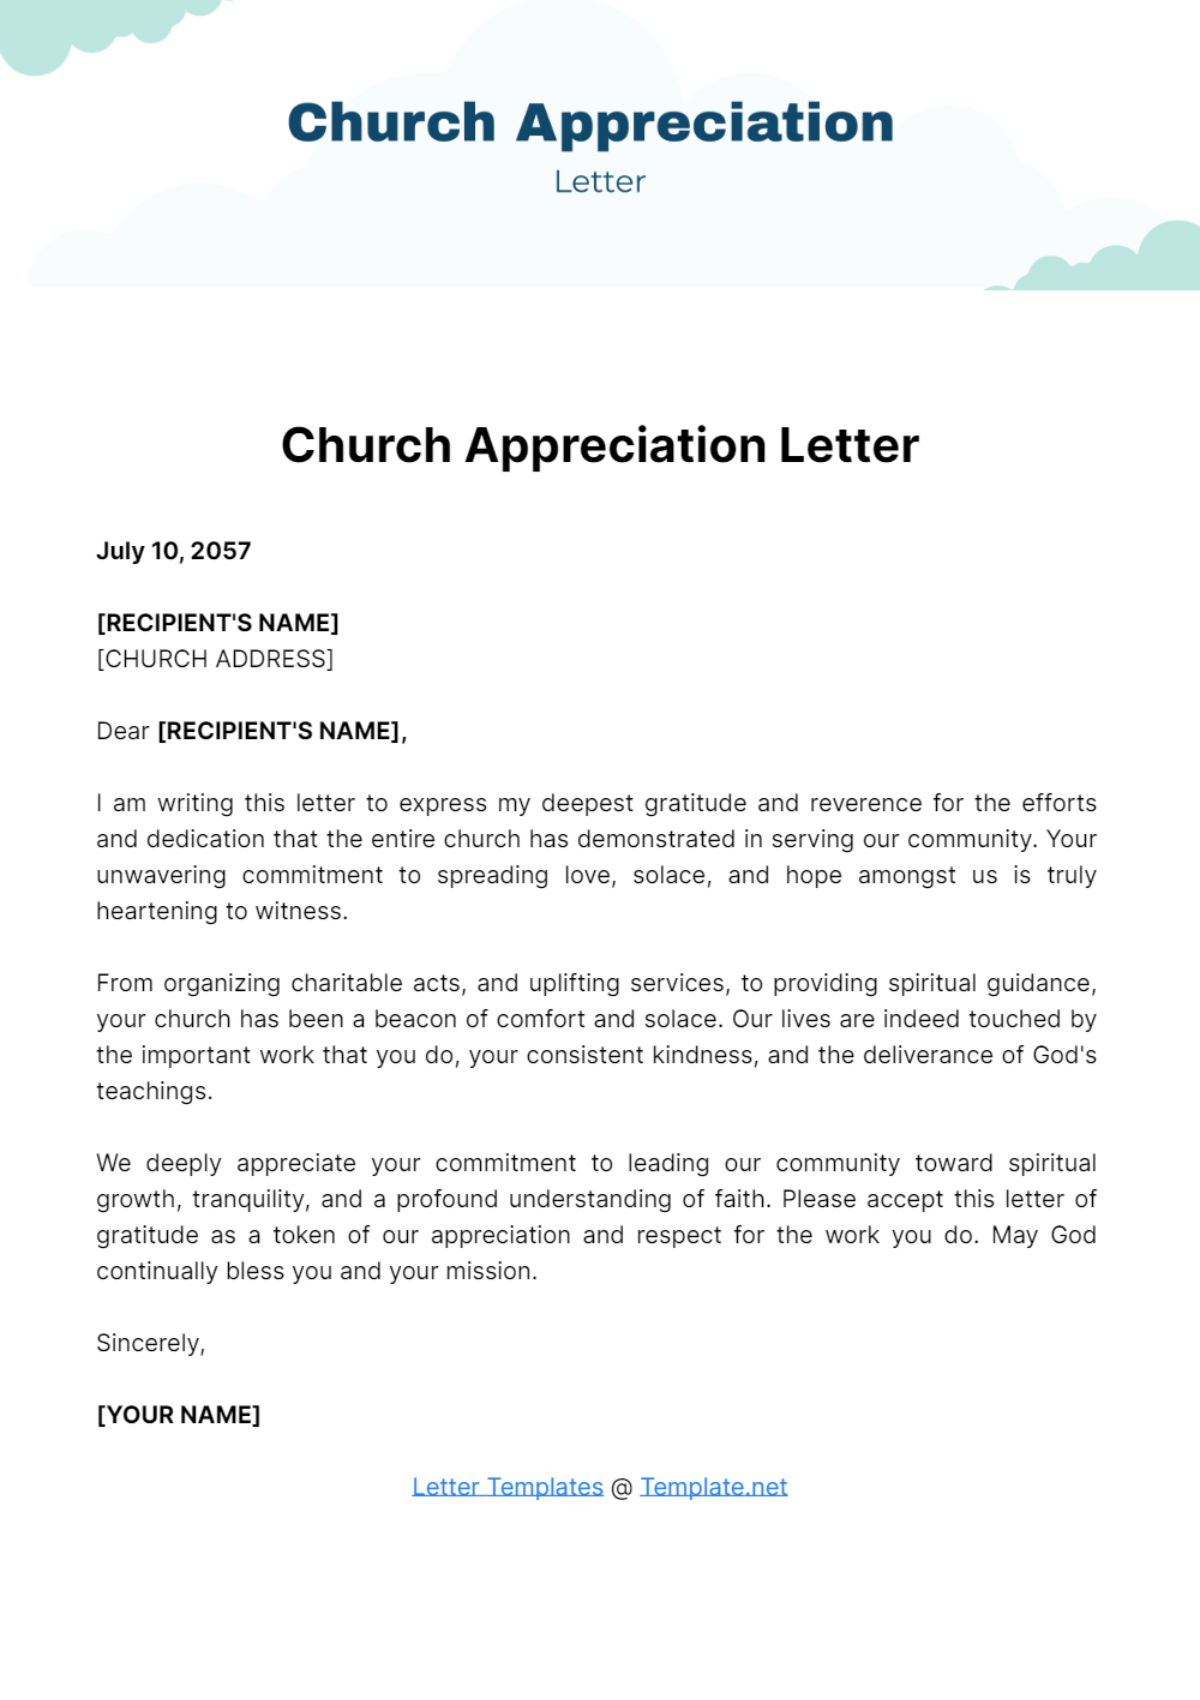 Church Appreciation Letter Template